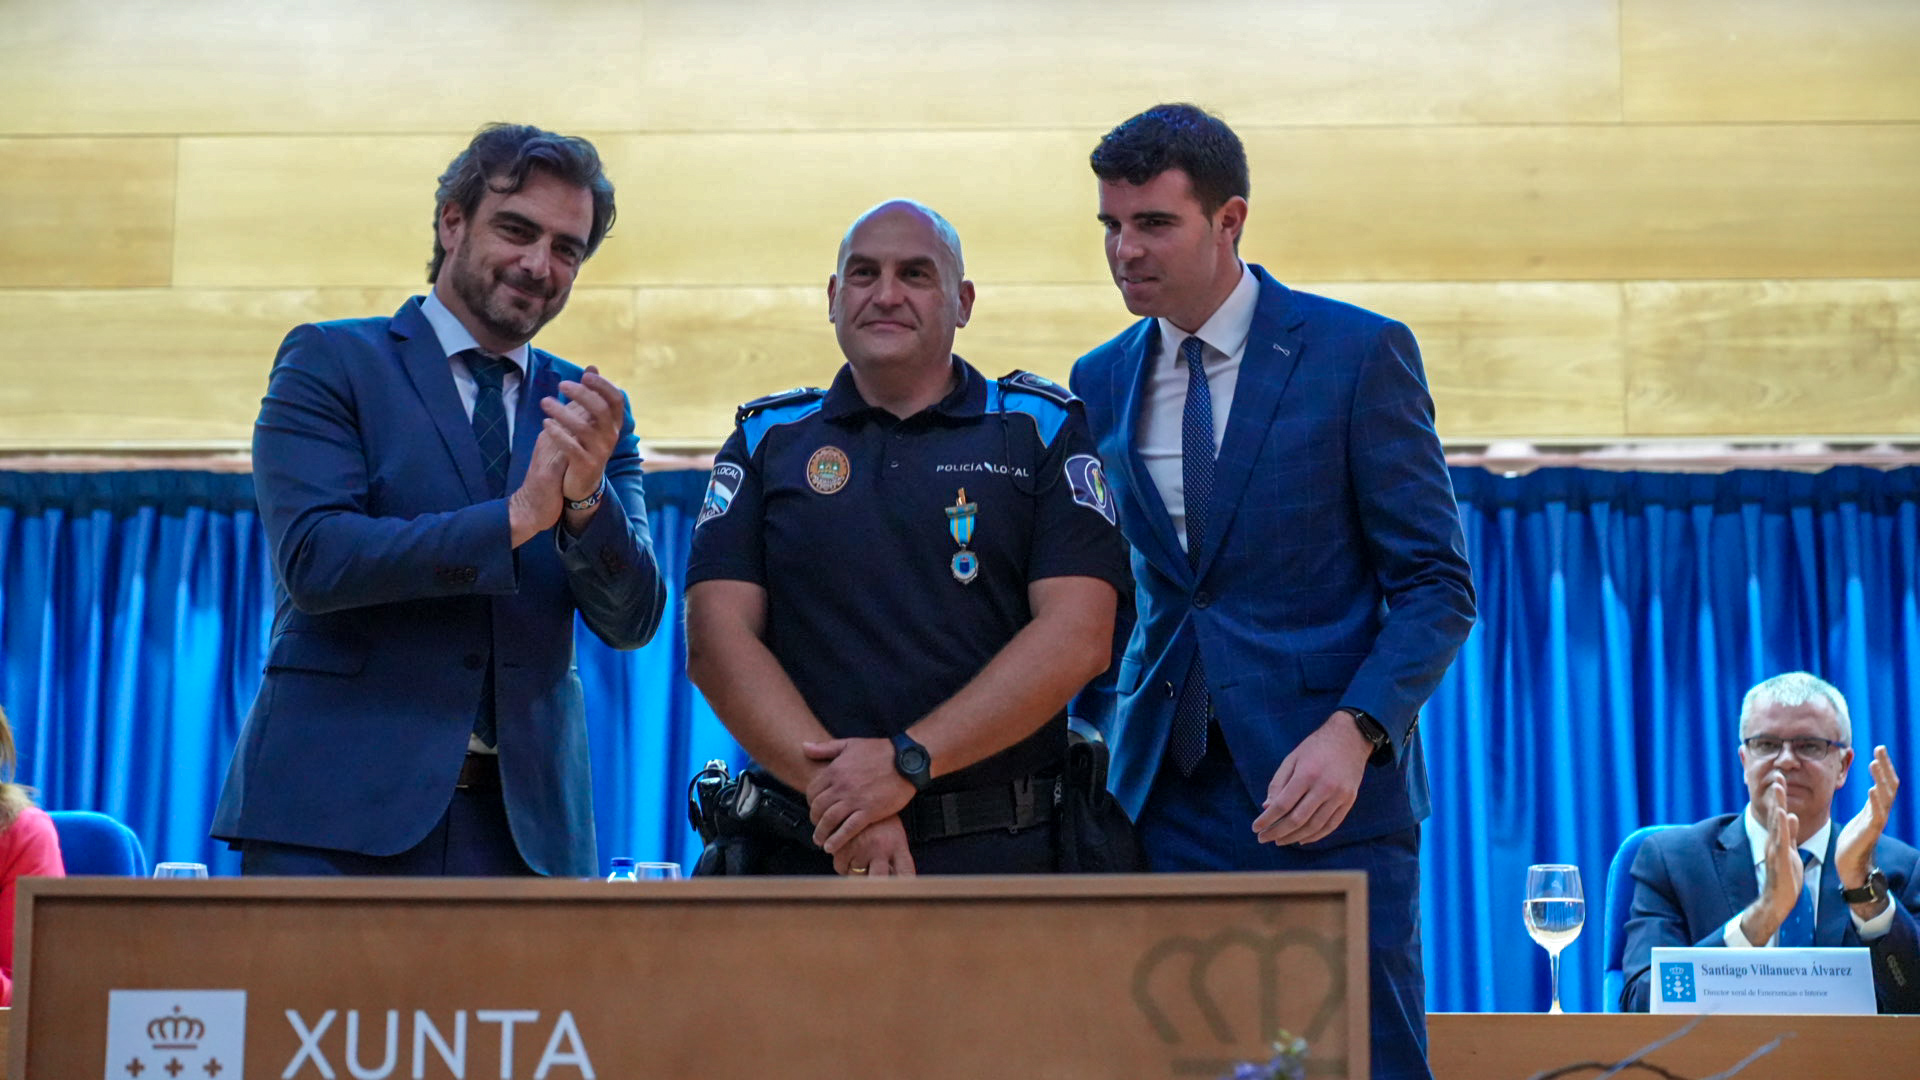 Image 3 of article A Xunta sinala os valores policiais como garantes da seguridade e do benestar da cidadanía